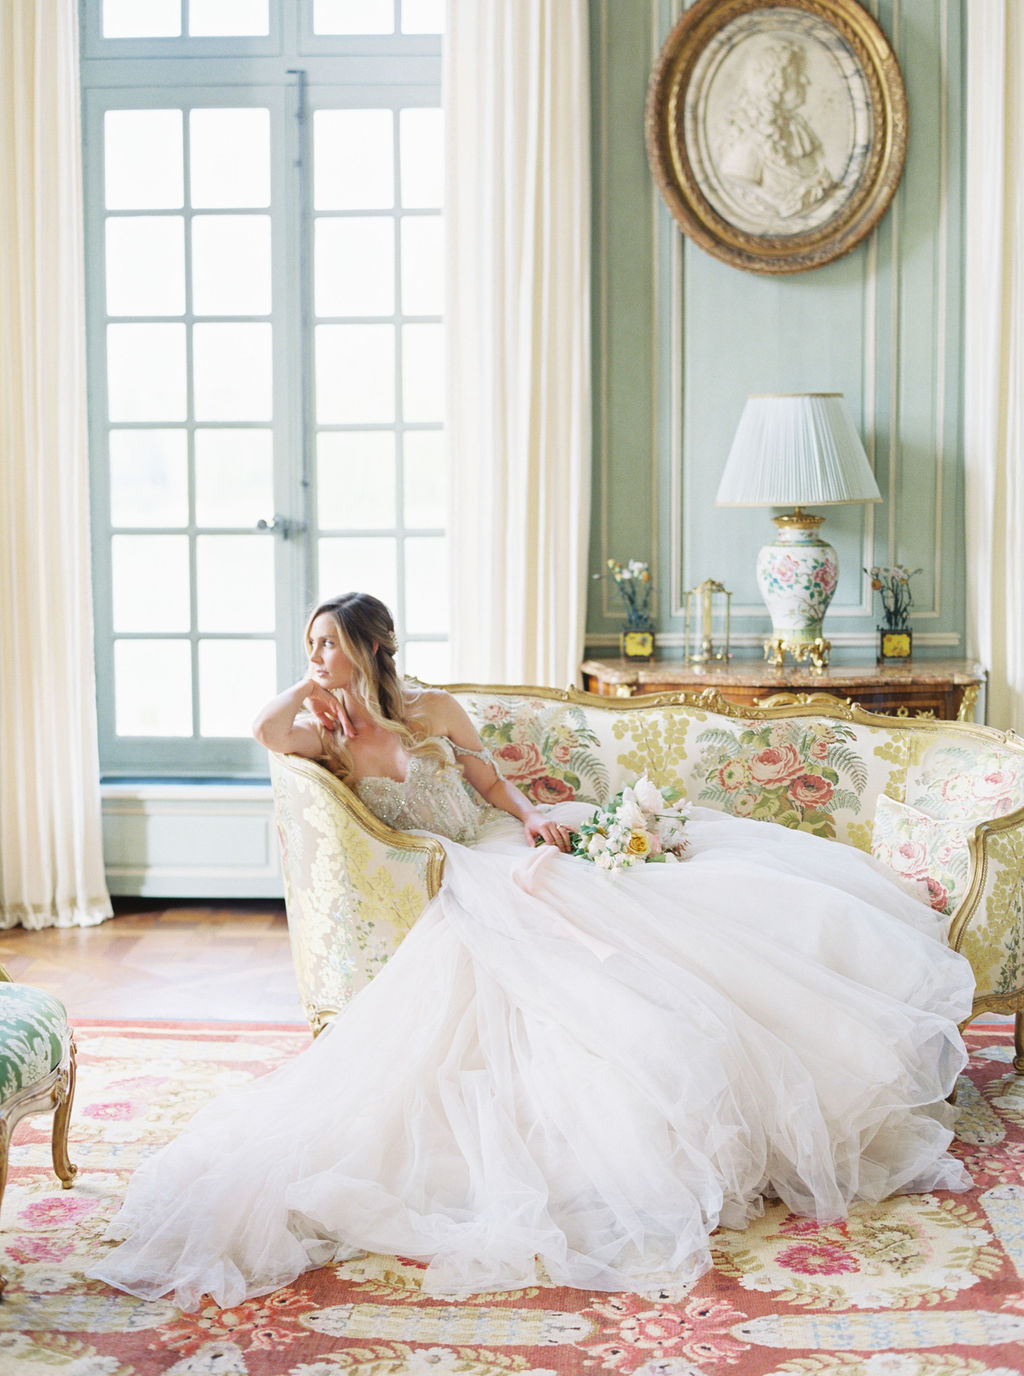 travellur_photoshoot__elegance_Jardin_de_Chateau_de_Villette_bridal_hair_accessories_interiors.jpg